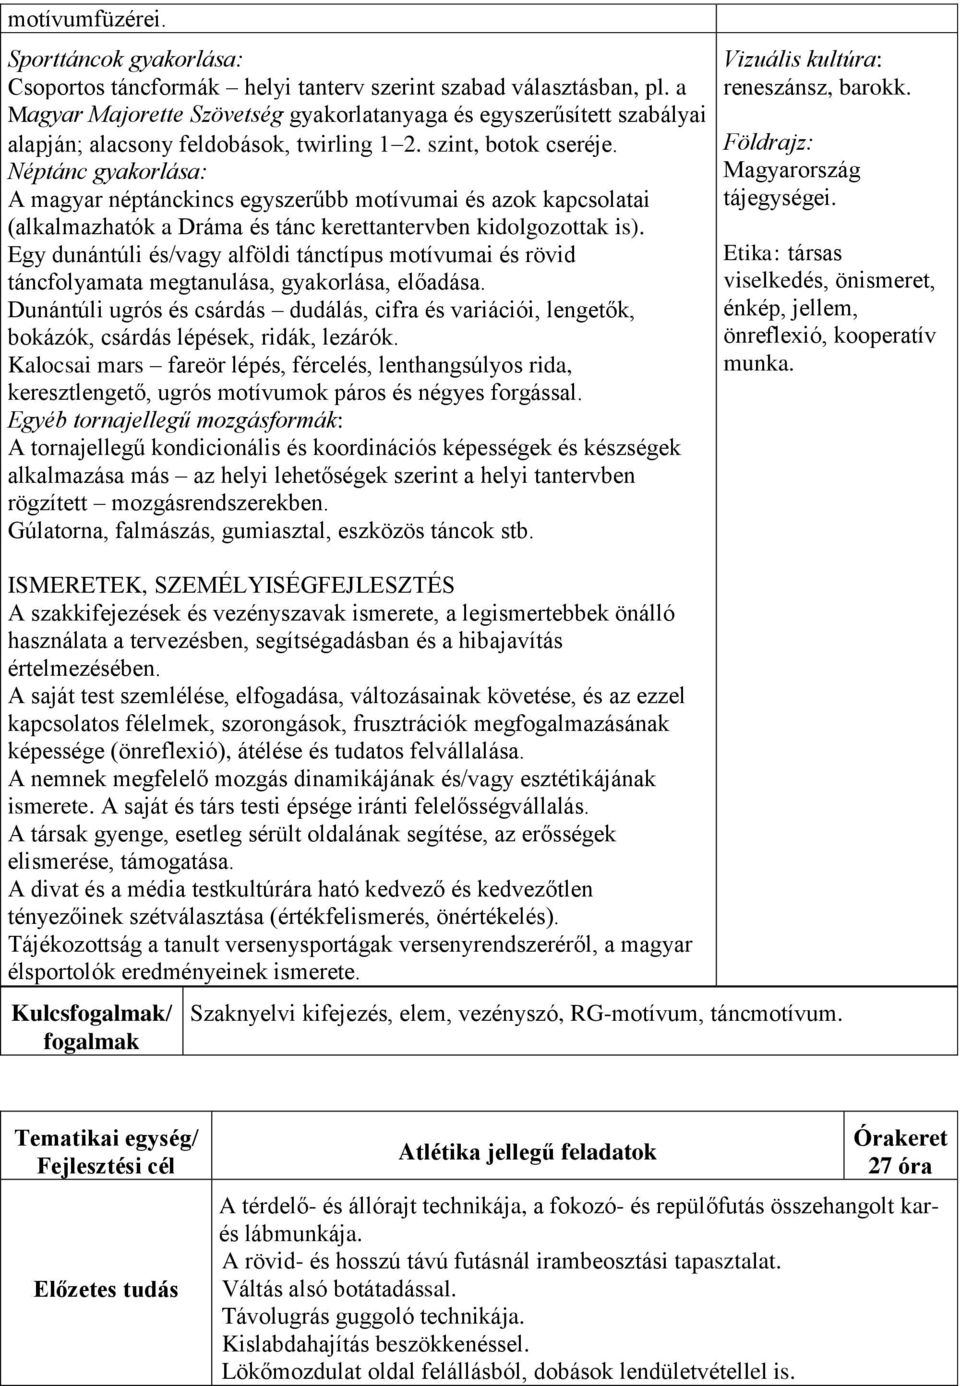 Néptánc gyakorlása: A magyar néptánckincs egyszerűbb motívumai és azok kapcsolatai (alkalmazhatók a Dráma és tánc kerettantervben kidolgozottak is).